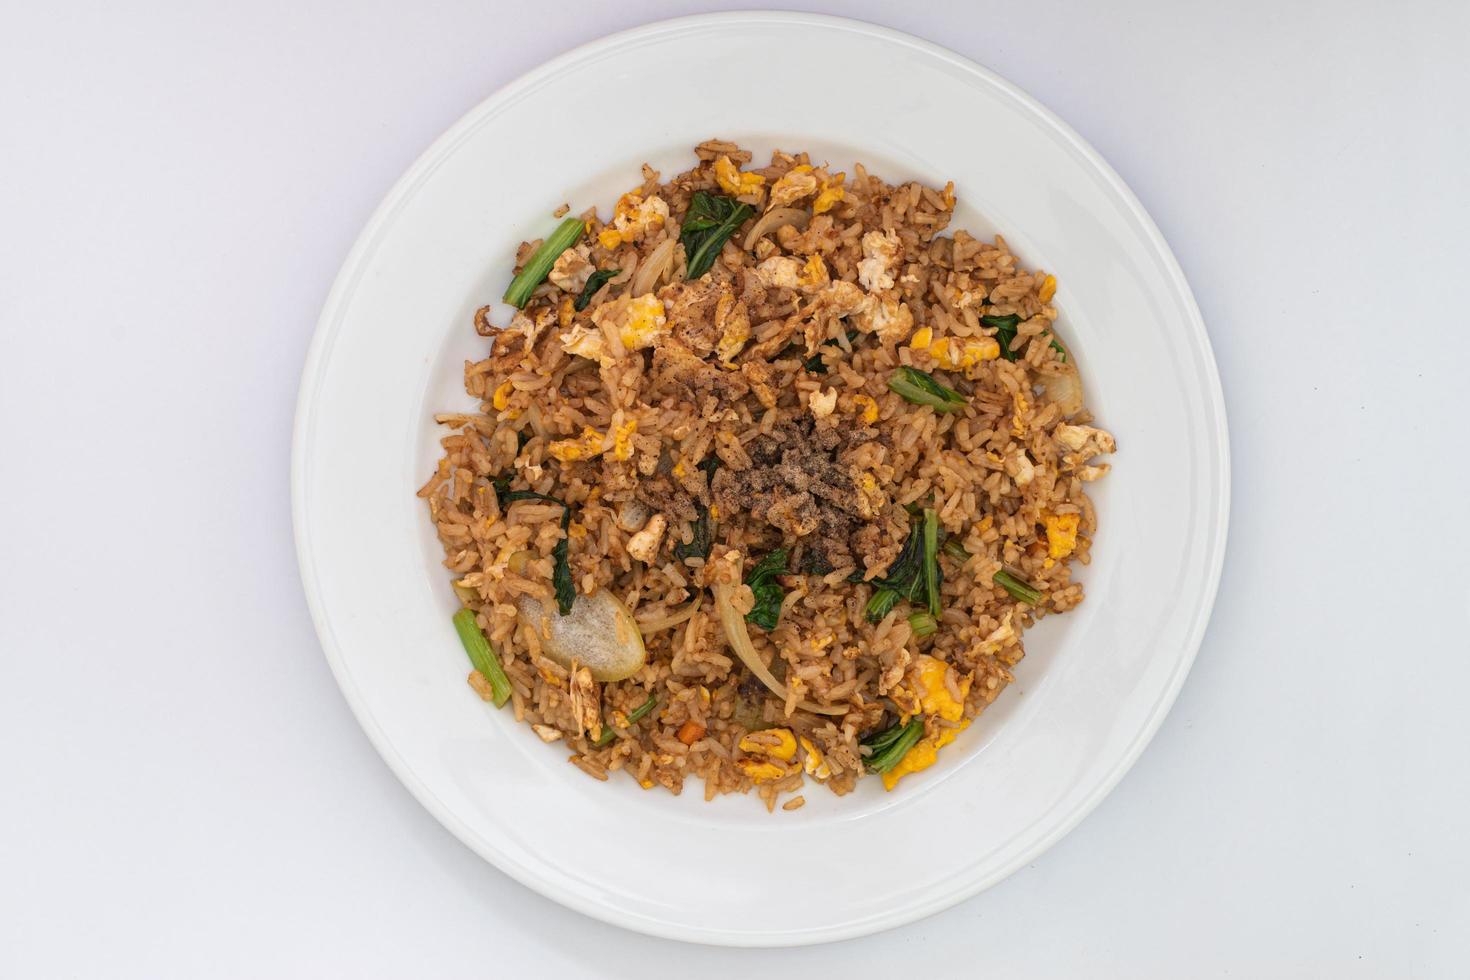 arroz frito simple con ingredientes simples, arroz, huevo frito, cebolla, zanahoria y verduras. arroz frito en el plato blanco aislado de fondo blanco. comida sencilla al estilo asiático. foto